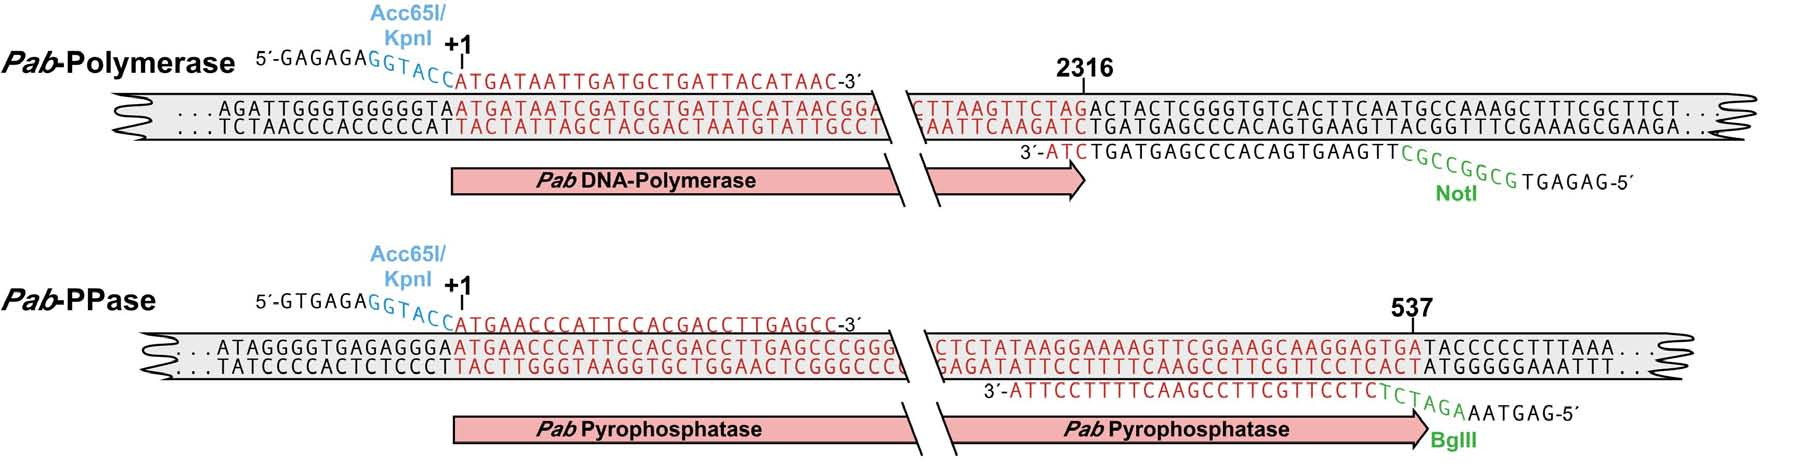 5 illustriert am Beispiel der Pab-Polymerase sowie der Pab-Pyrophosphatase die Hybridisierungs-Positionen der Primer auf der genomischen DNA. Abb.